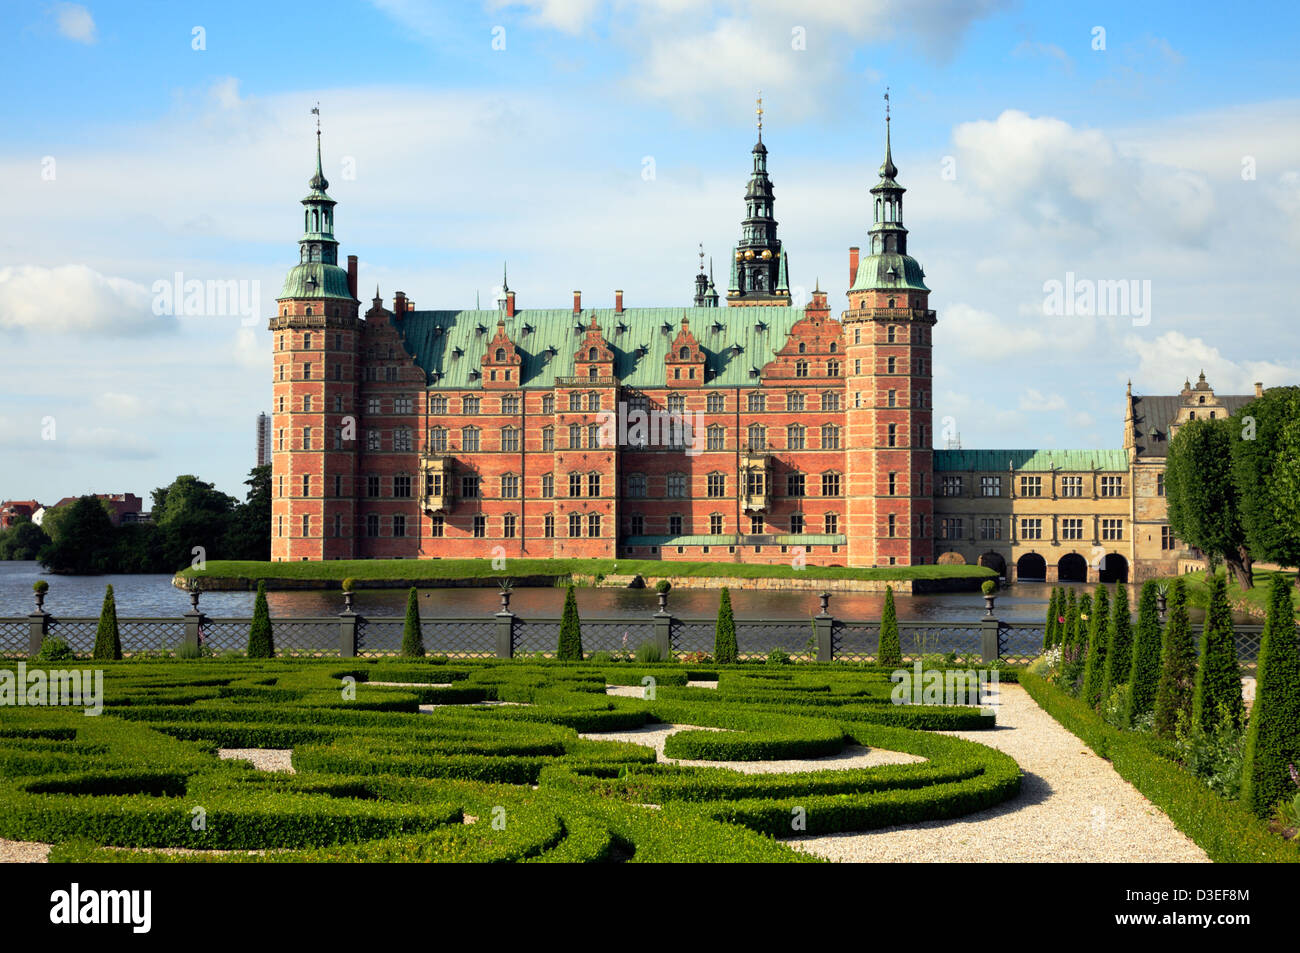 Das Schloss Frederiksborg im niederländischen Renaissance-Stil und der Garten im Stil des Barock in Hillerød, Nordsealand, Dänemark an einem sonnigen Sommermorgen. Sommertag. Stockfoto